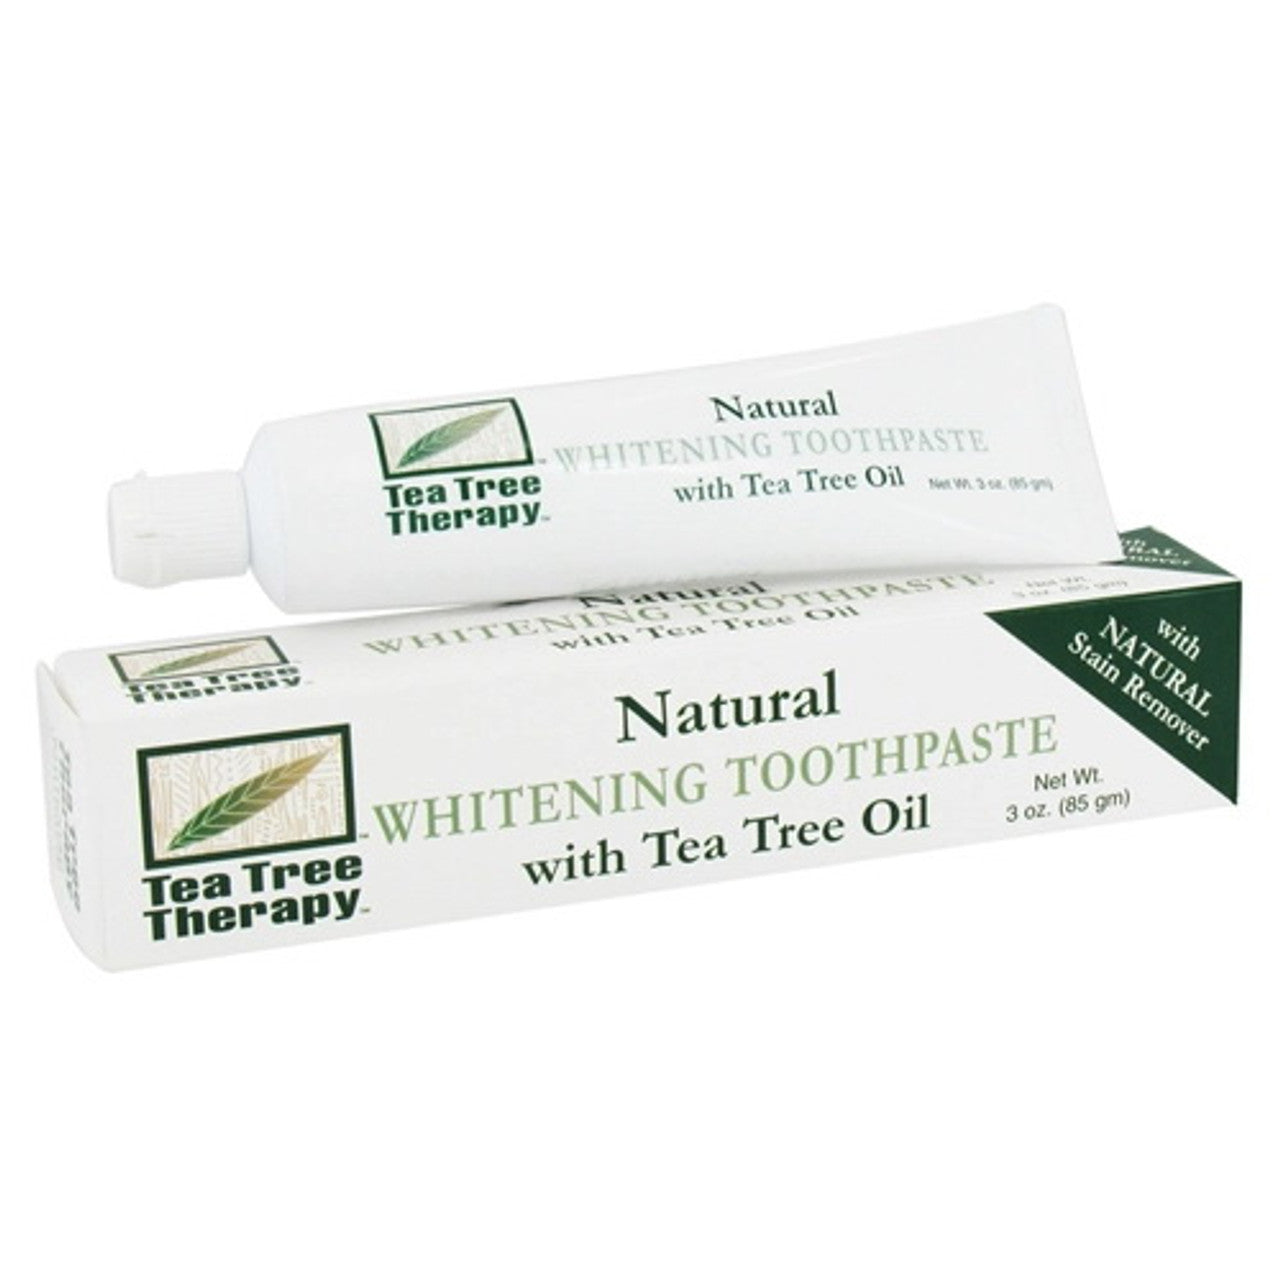 Tea Tree Therapy Whitening Toothpaste, With Tea Tree Oil - 3 Oz